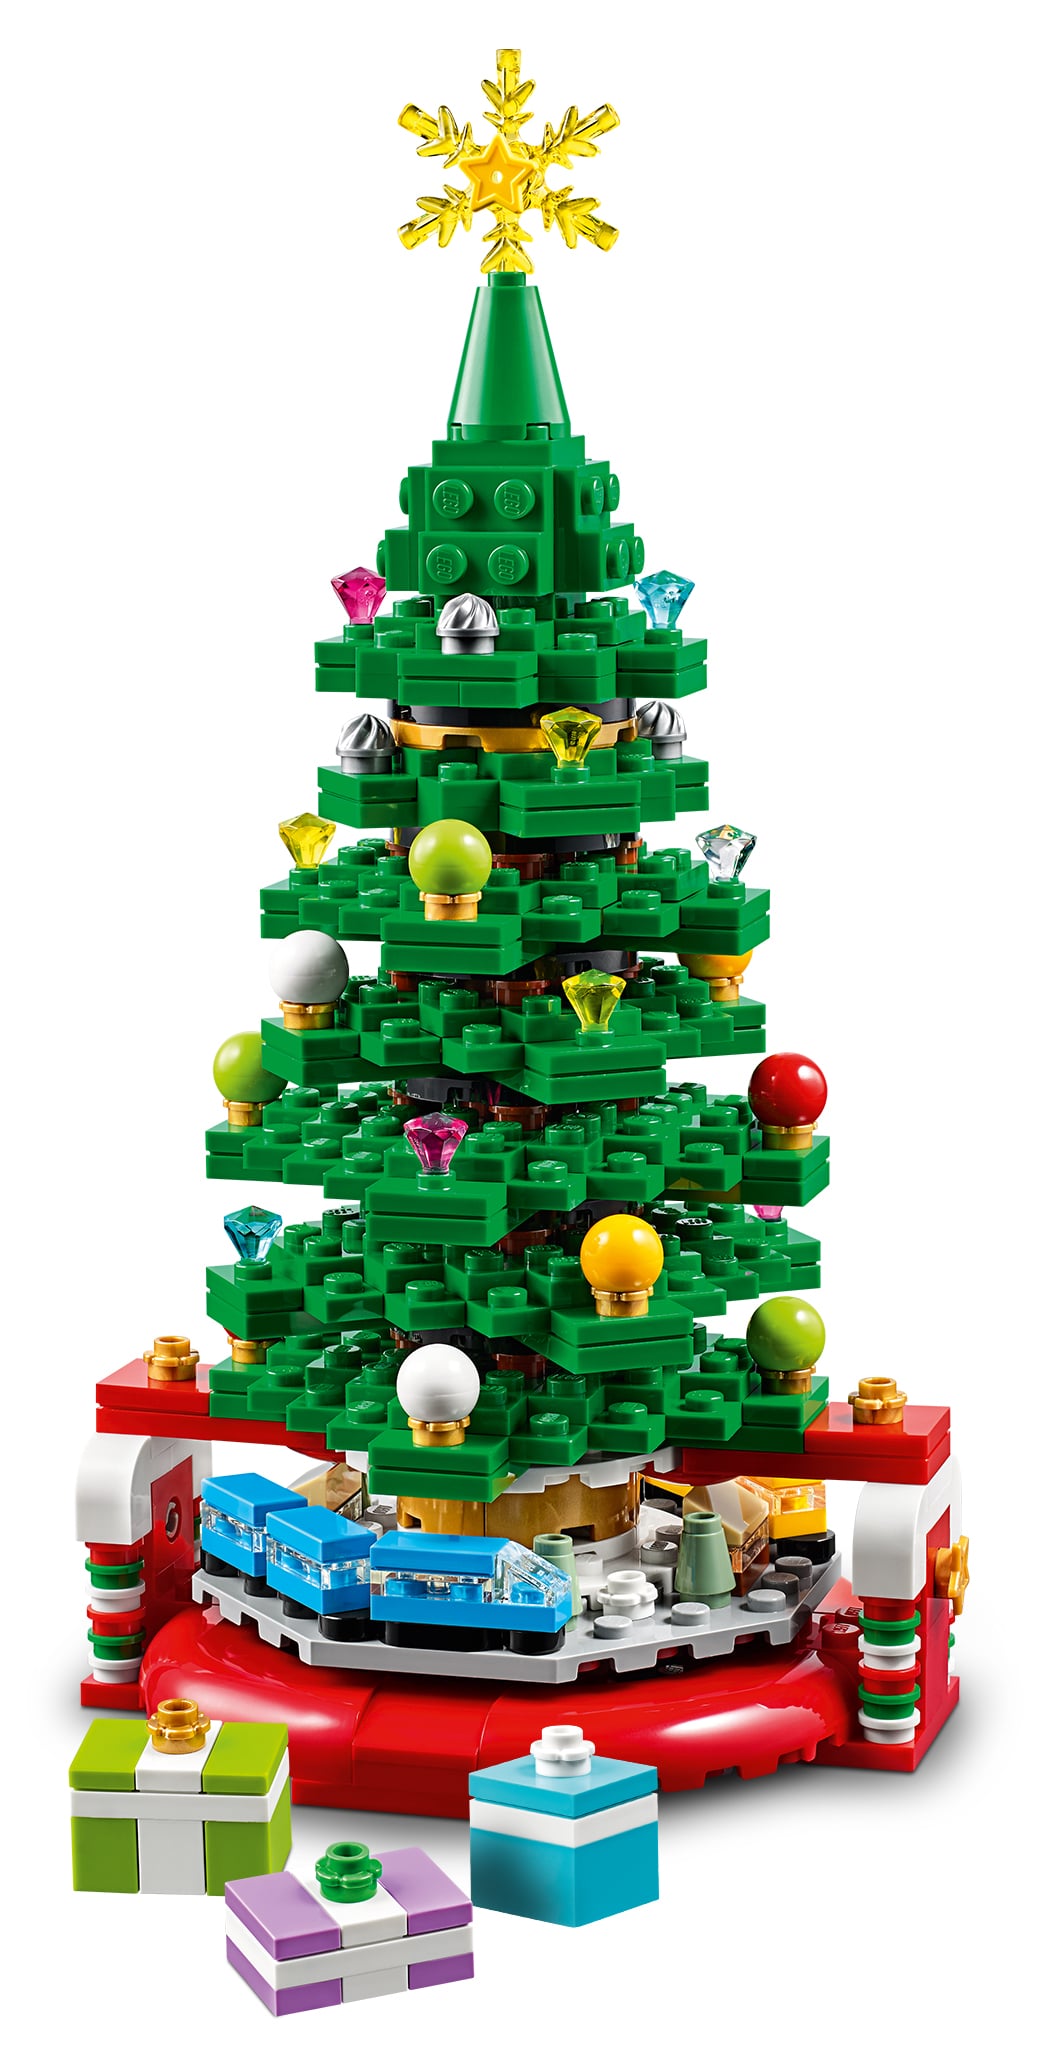 LEGO 40338 Weihnachtsbaum